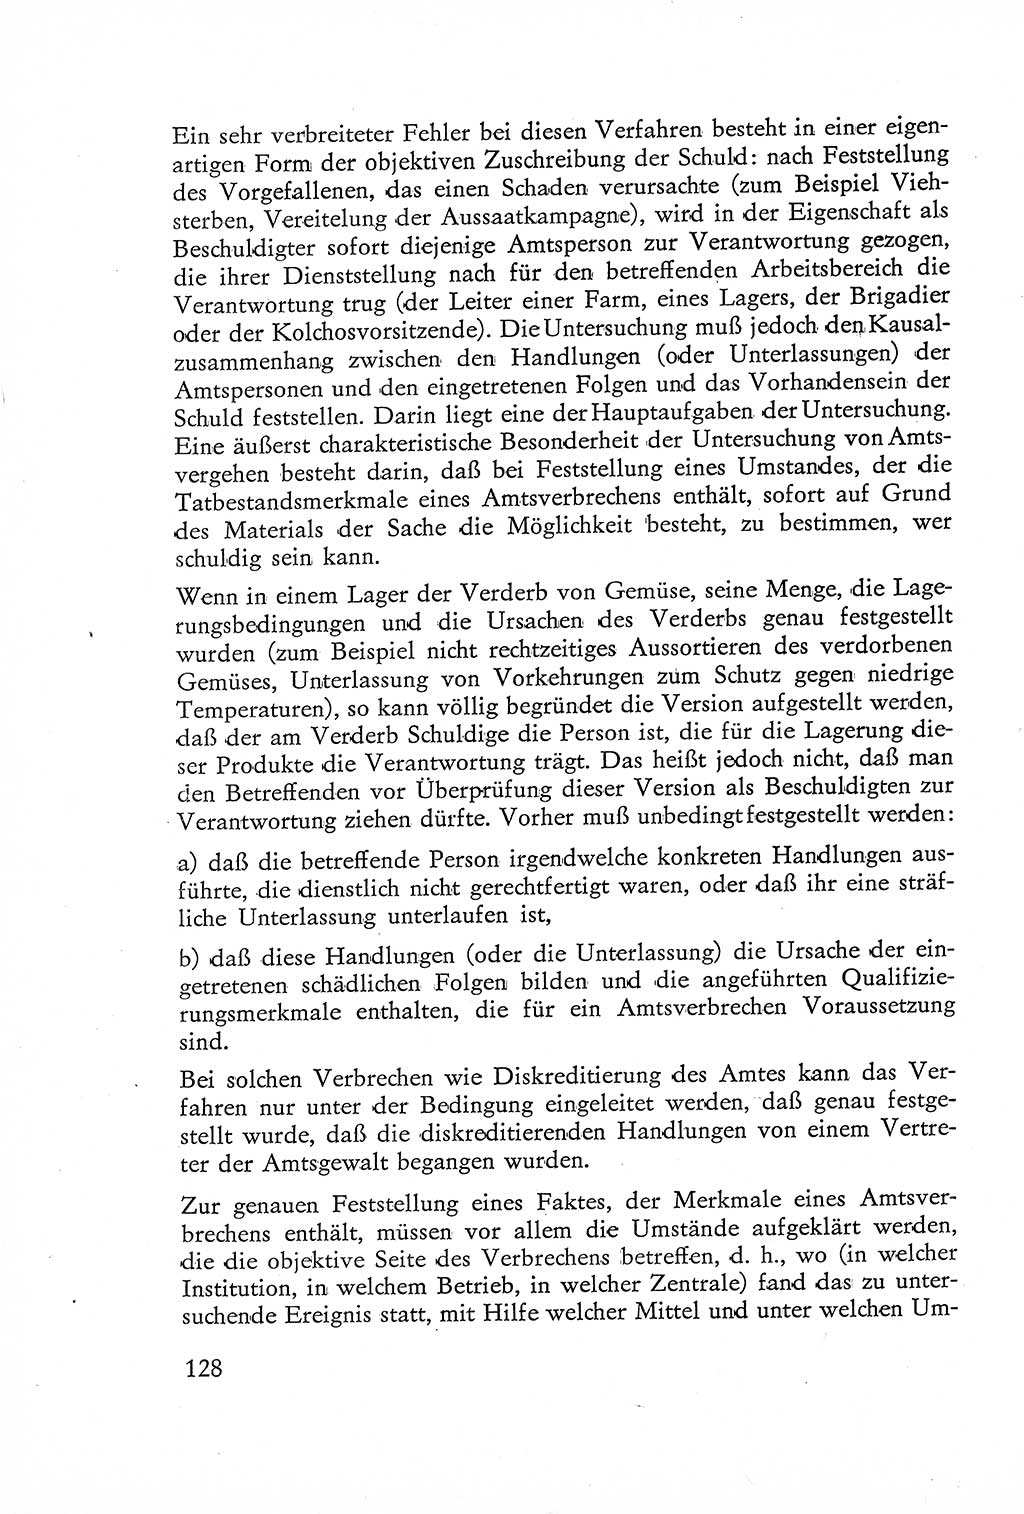 Die Untersuchung einzelner Verbrechensarten [Deutsche Demokratische Republik (DDR)] 1960, Seite 128 (Unters. Verbr.-Art. DDR 1960, S. 128)